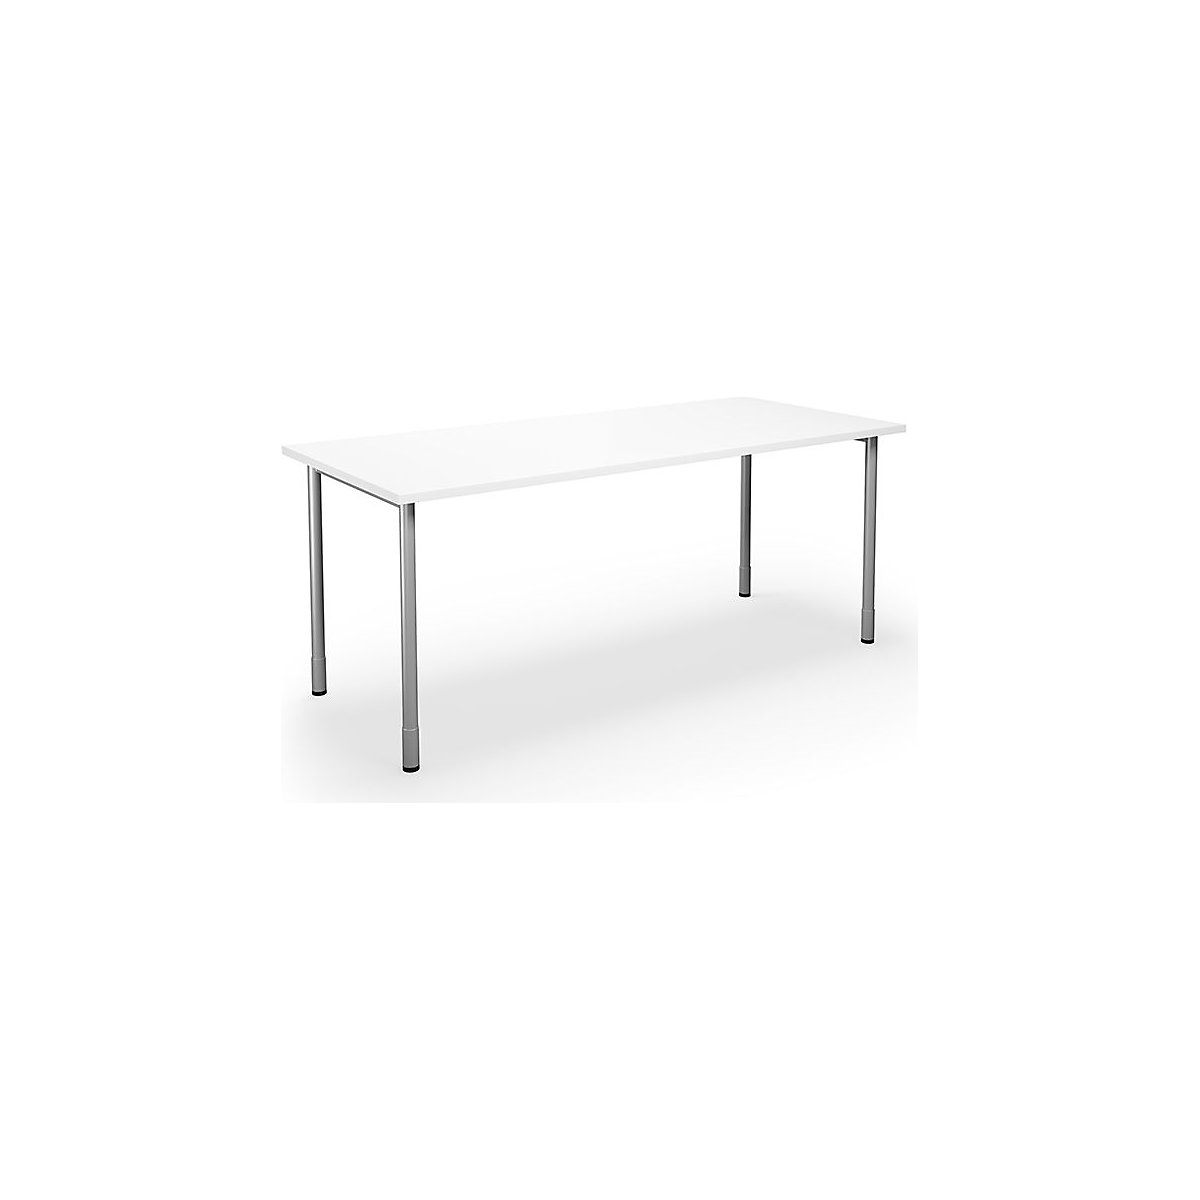 DUO-C multi-purpose desk, straight tabletop, WxD 1800 x 800 mm, white, silver-15